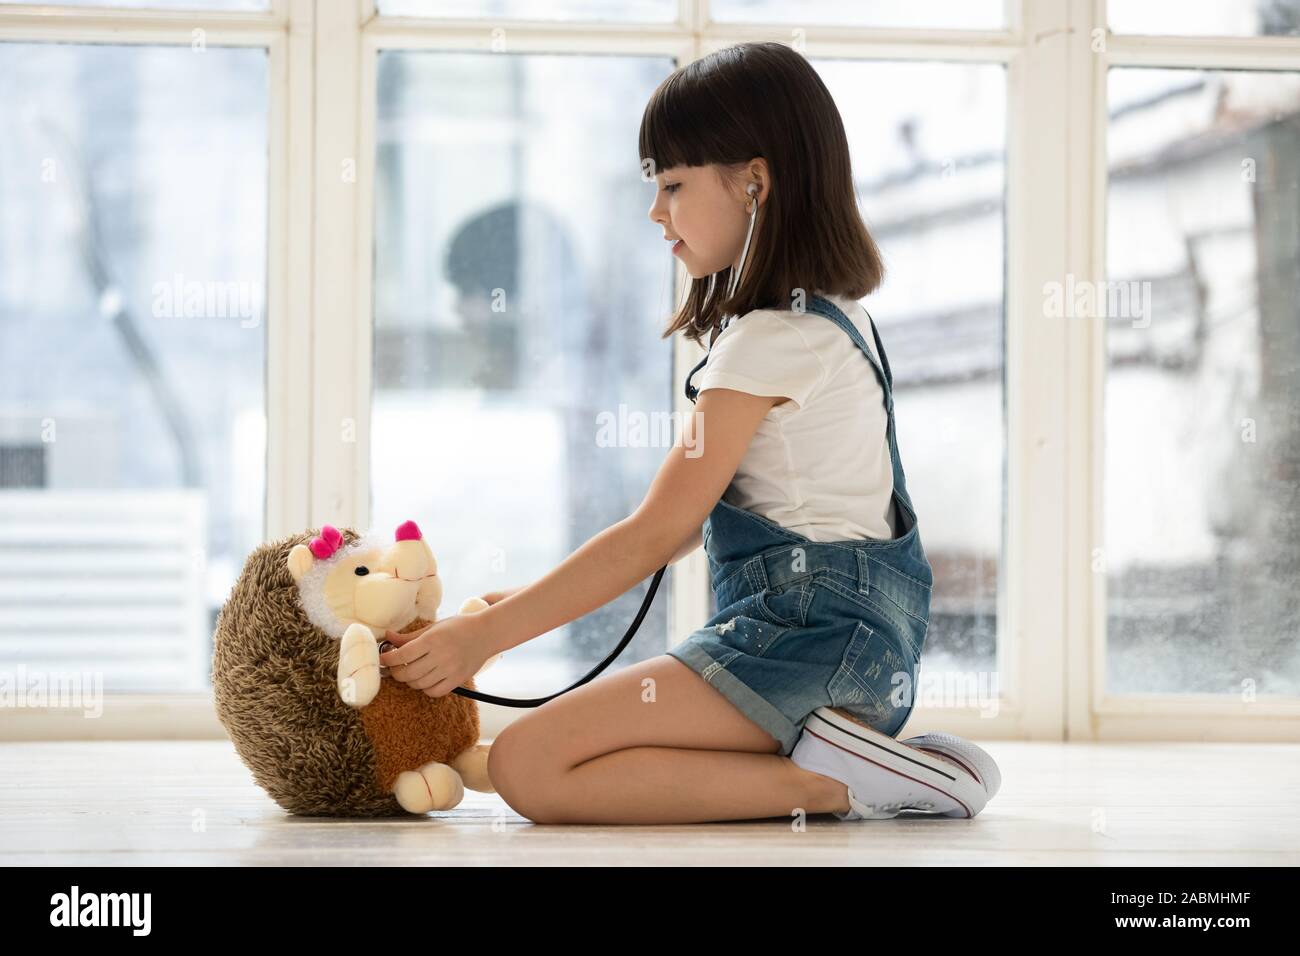 Petite fille utiliser cure stéthoscope hérisson jouet Banque D'Images